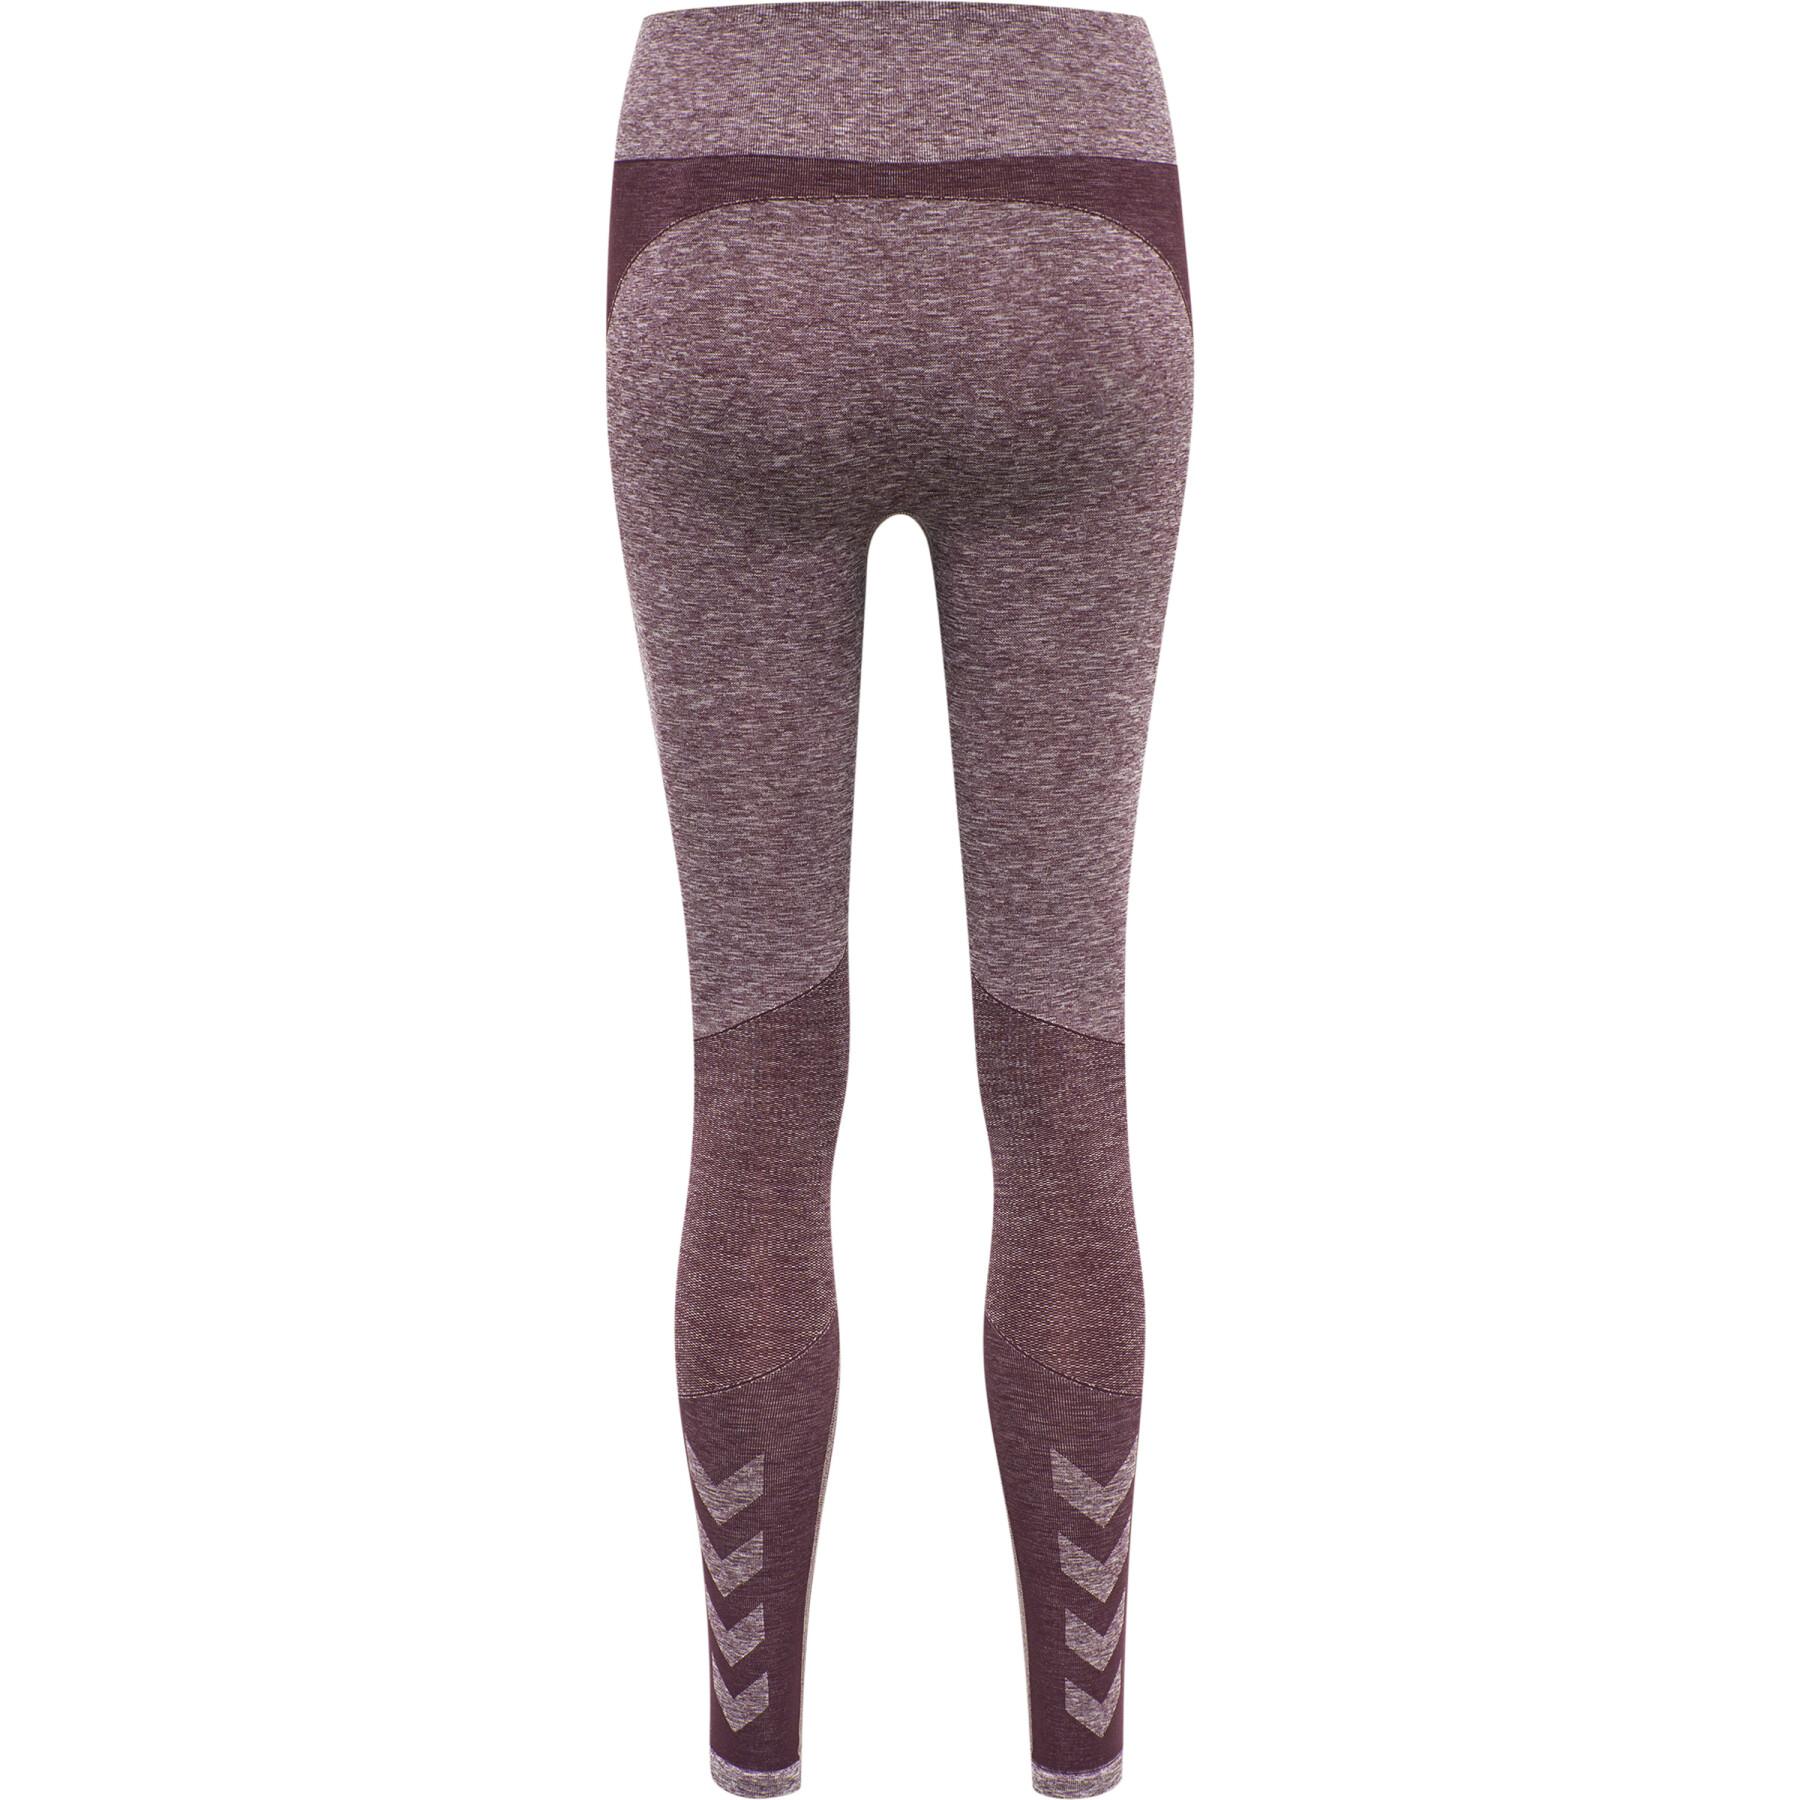 Women's high-waisted leggings Hummel hmlkady seamless